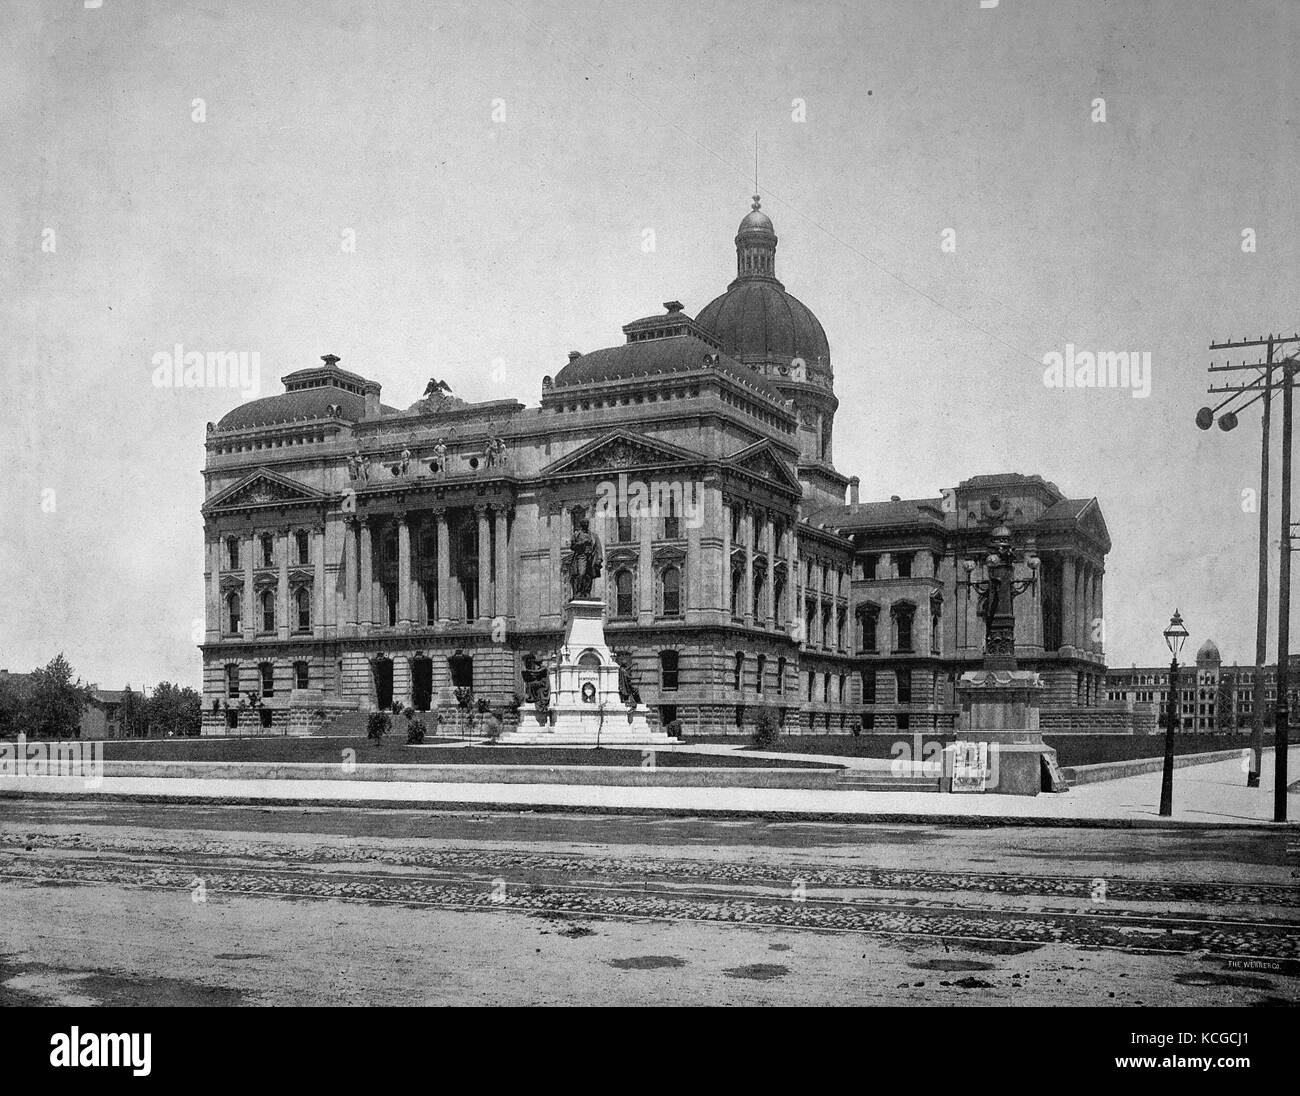 États-unis d'Amérique, le Capitol à Indianapolis, Indiana State, amélioration numérique reproduction d'une photo historique de l'année 1899 (estimé) Banque D'Images